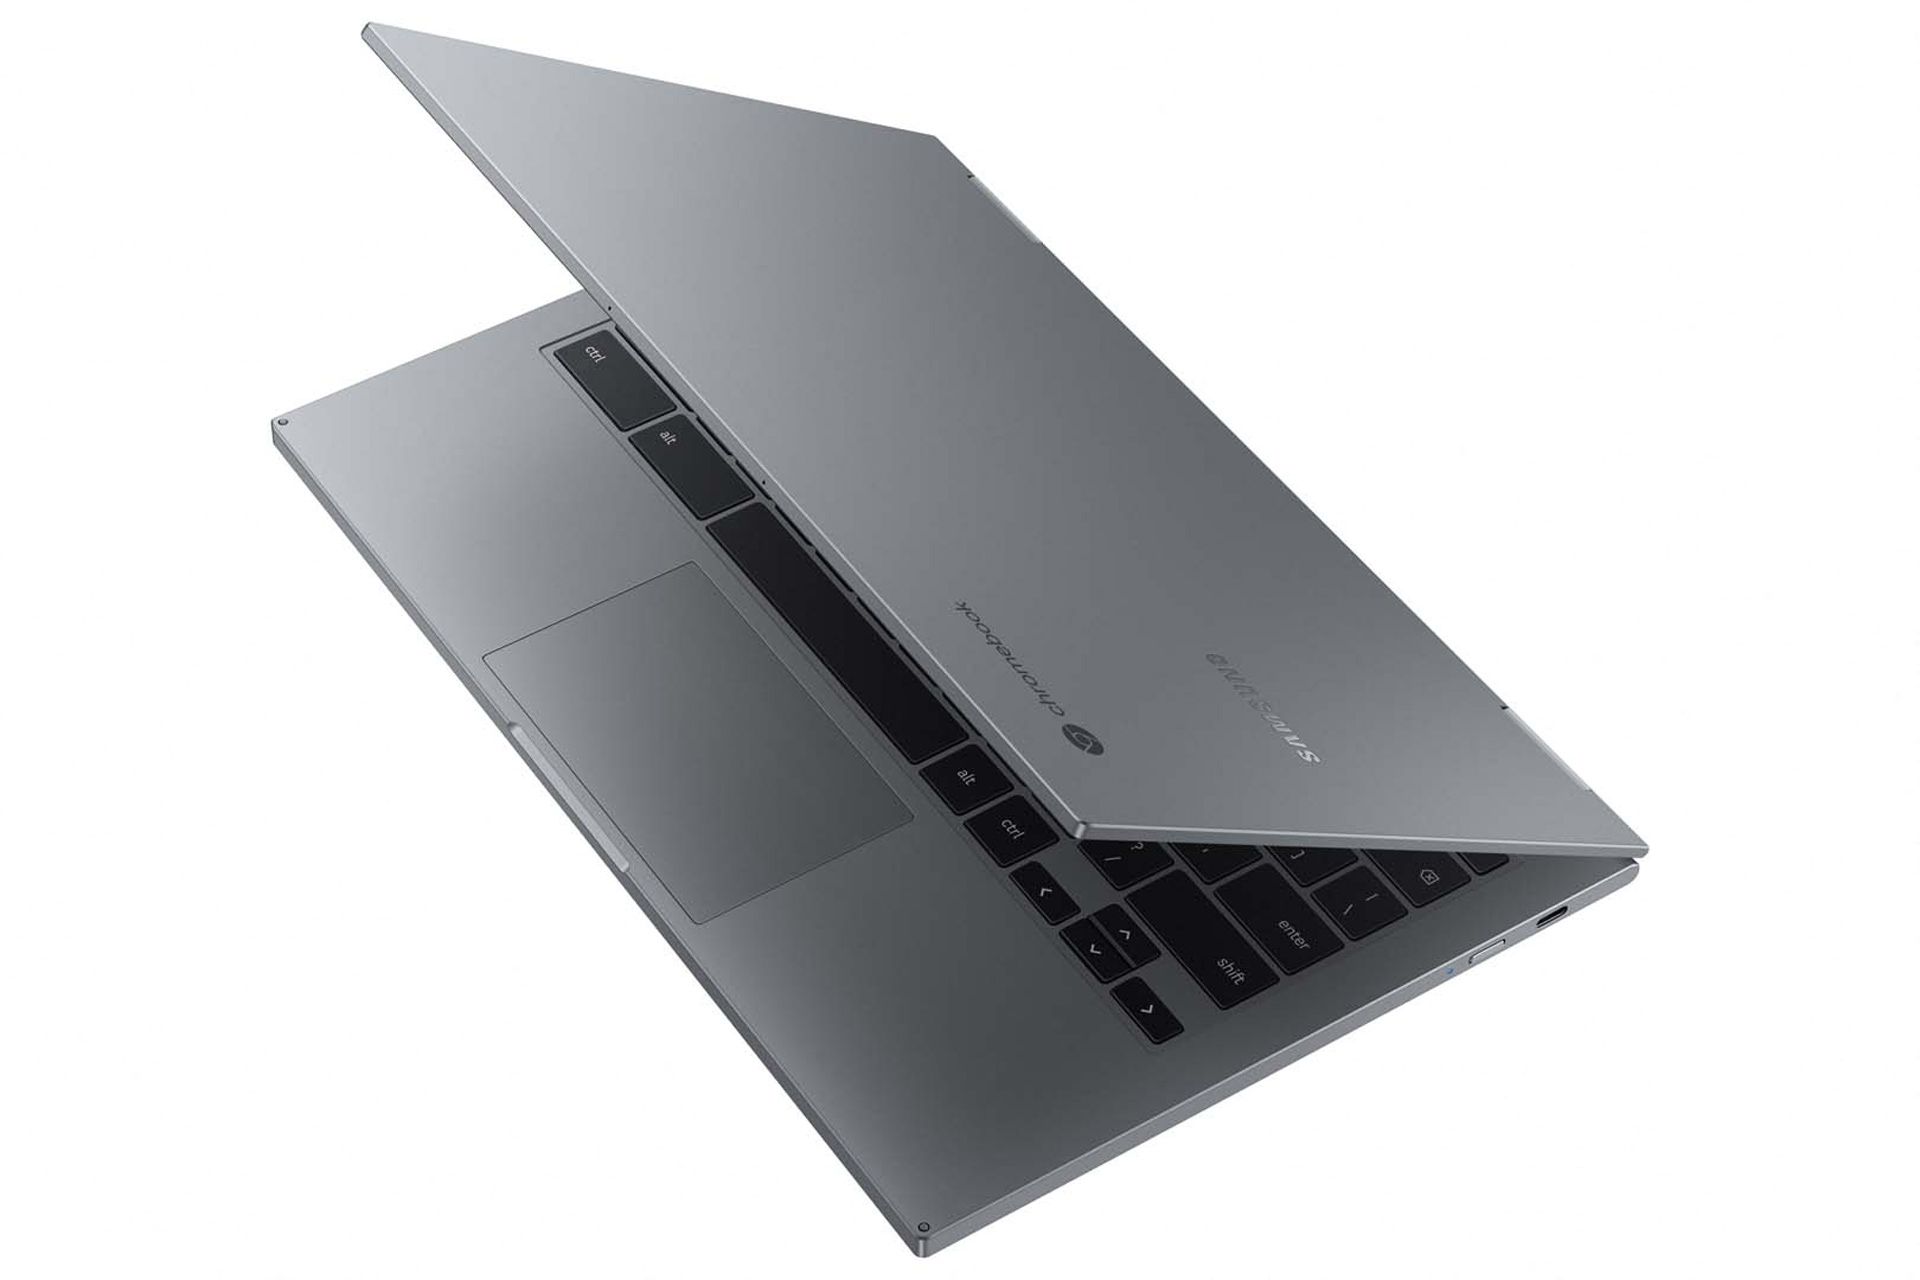 گلکسی کروم بوک ۲ / Galaxy Chromebook 2 سامسونگ از بالا نیمه باز خاکستری